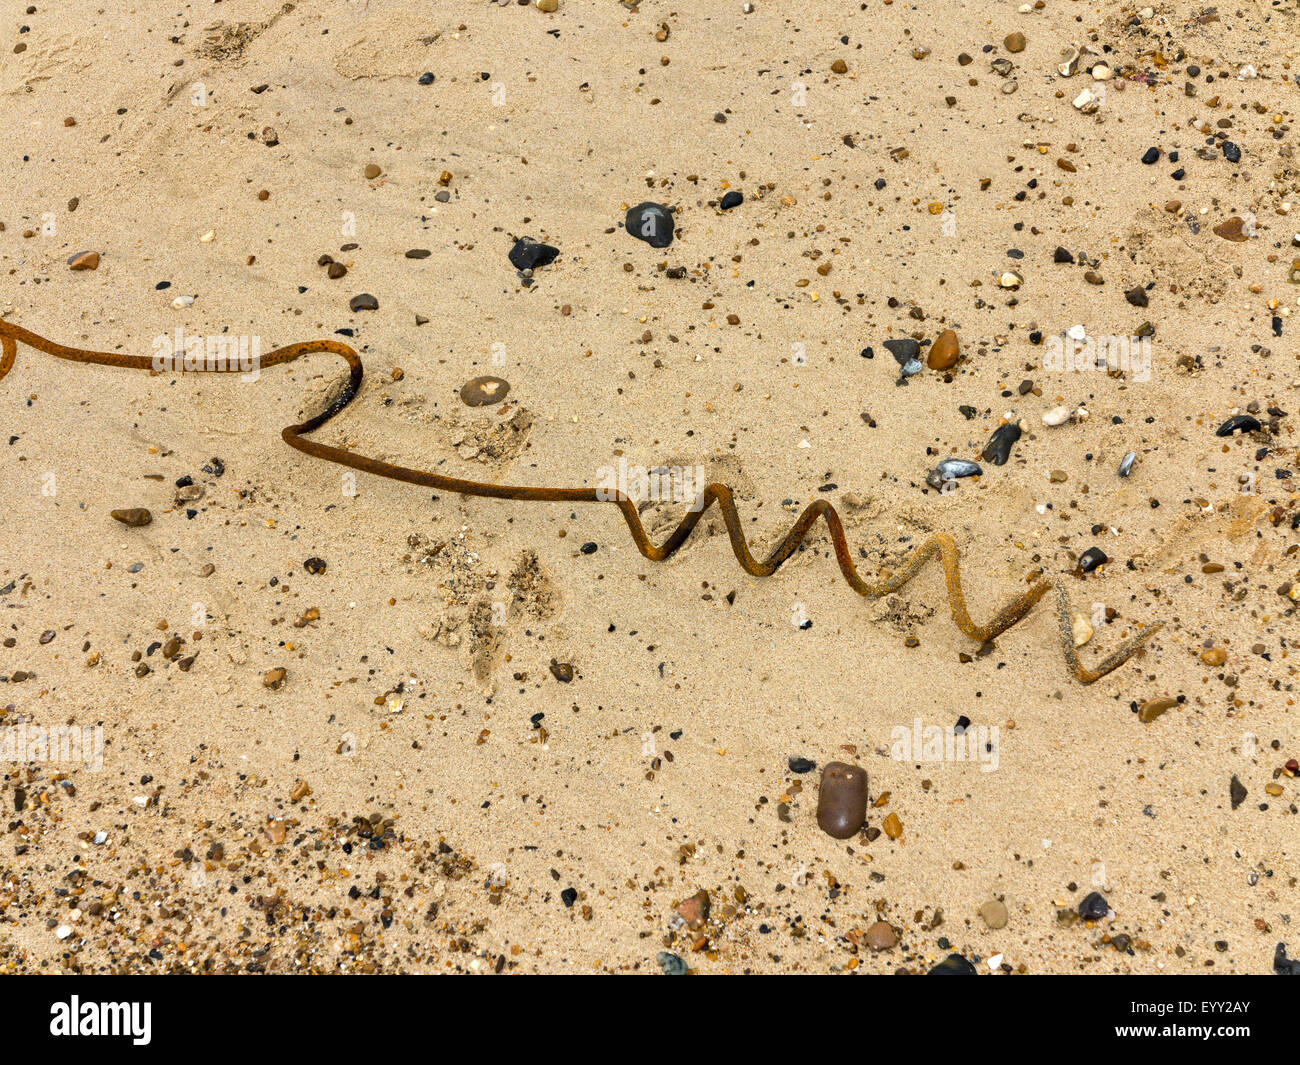 Rostenden Korkenzieher verbogen Metall an einem Strand mit kleinen Kieselsteinen Stockfoto